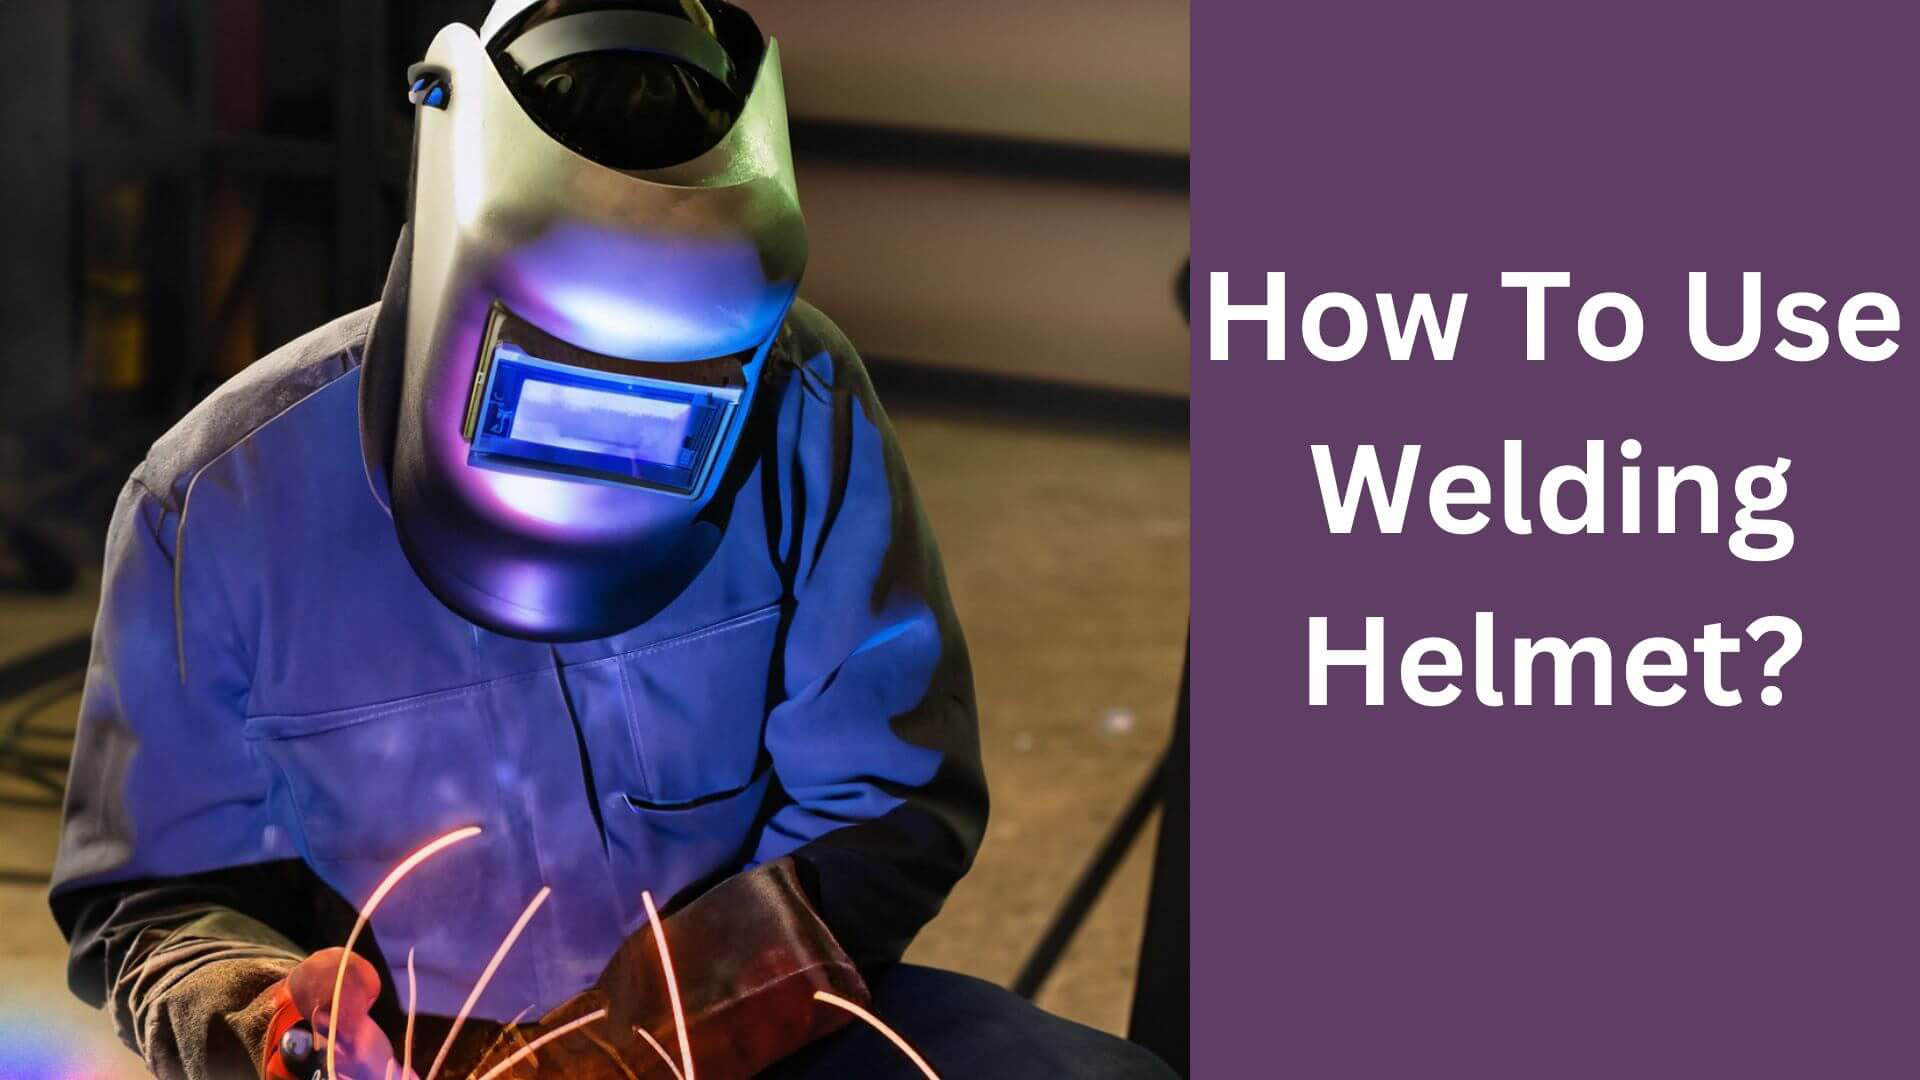 How To Use Welding Helmet?